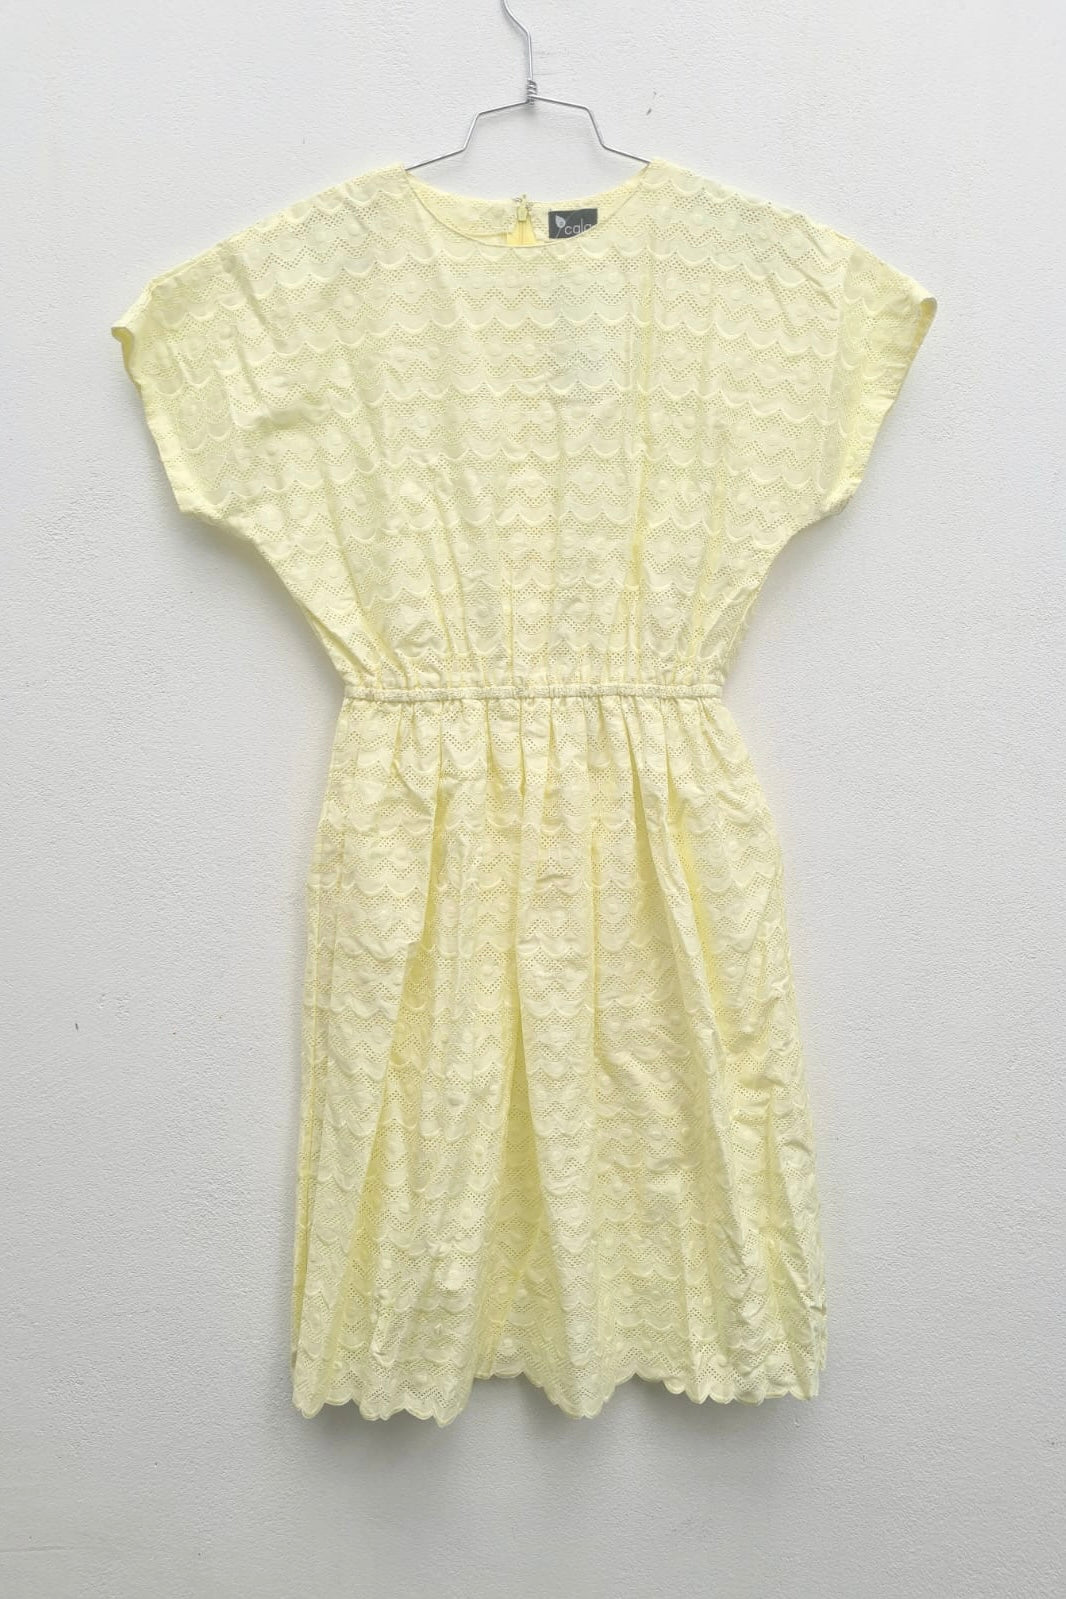 שמלת וינטג׳ גלים צהוב